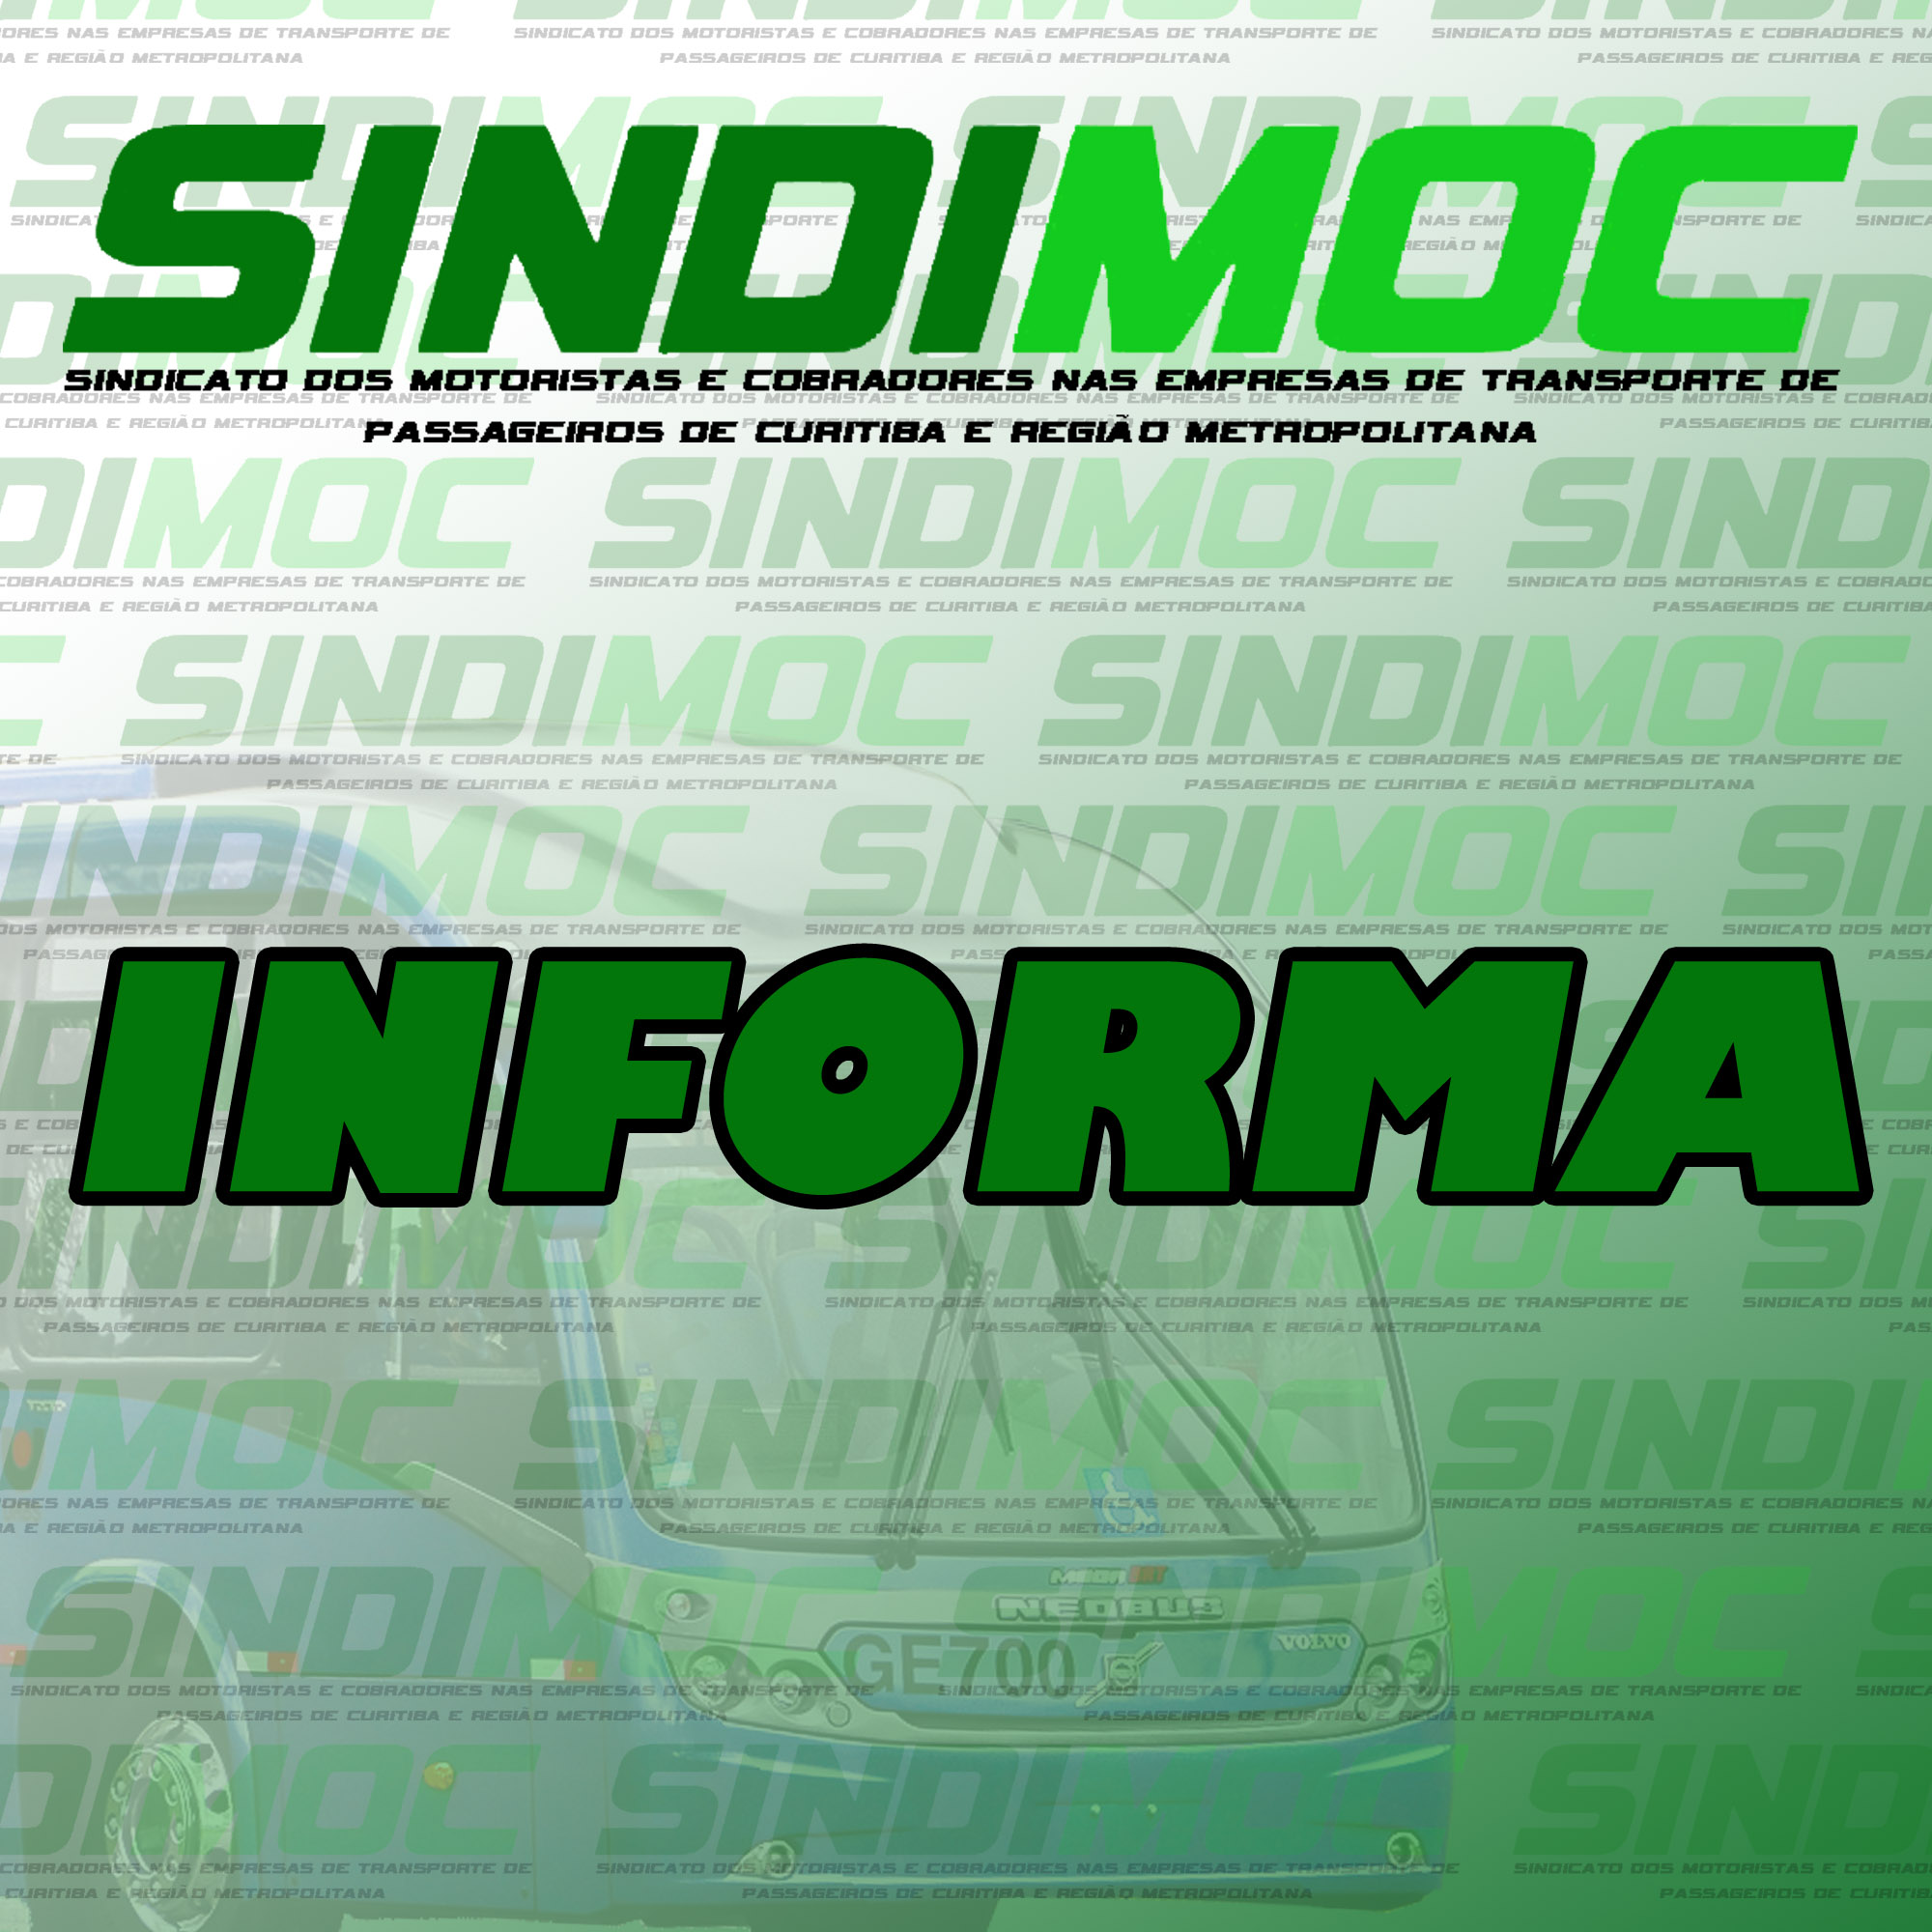 Sindimoc informa seus associados